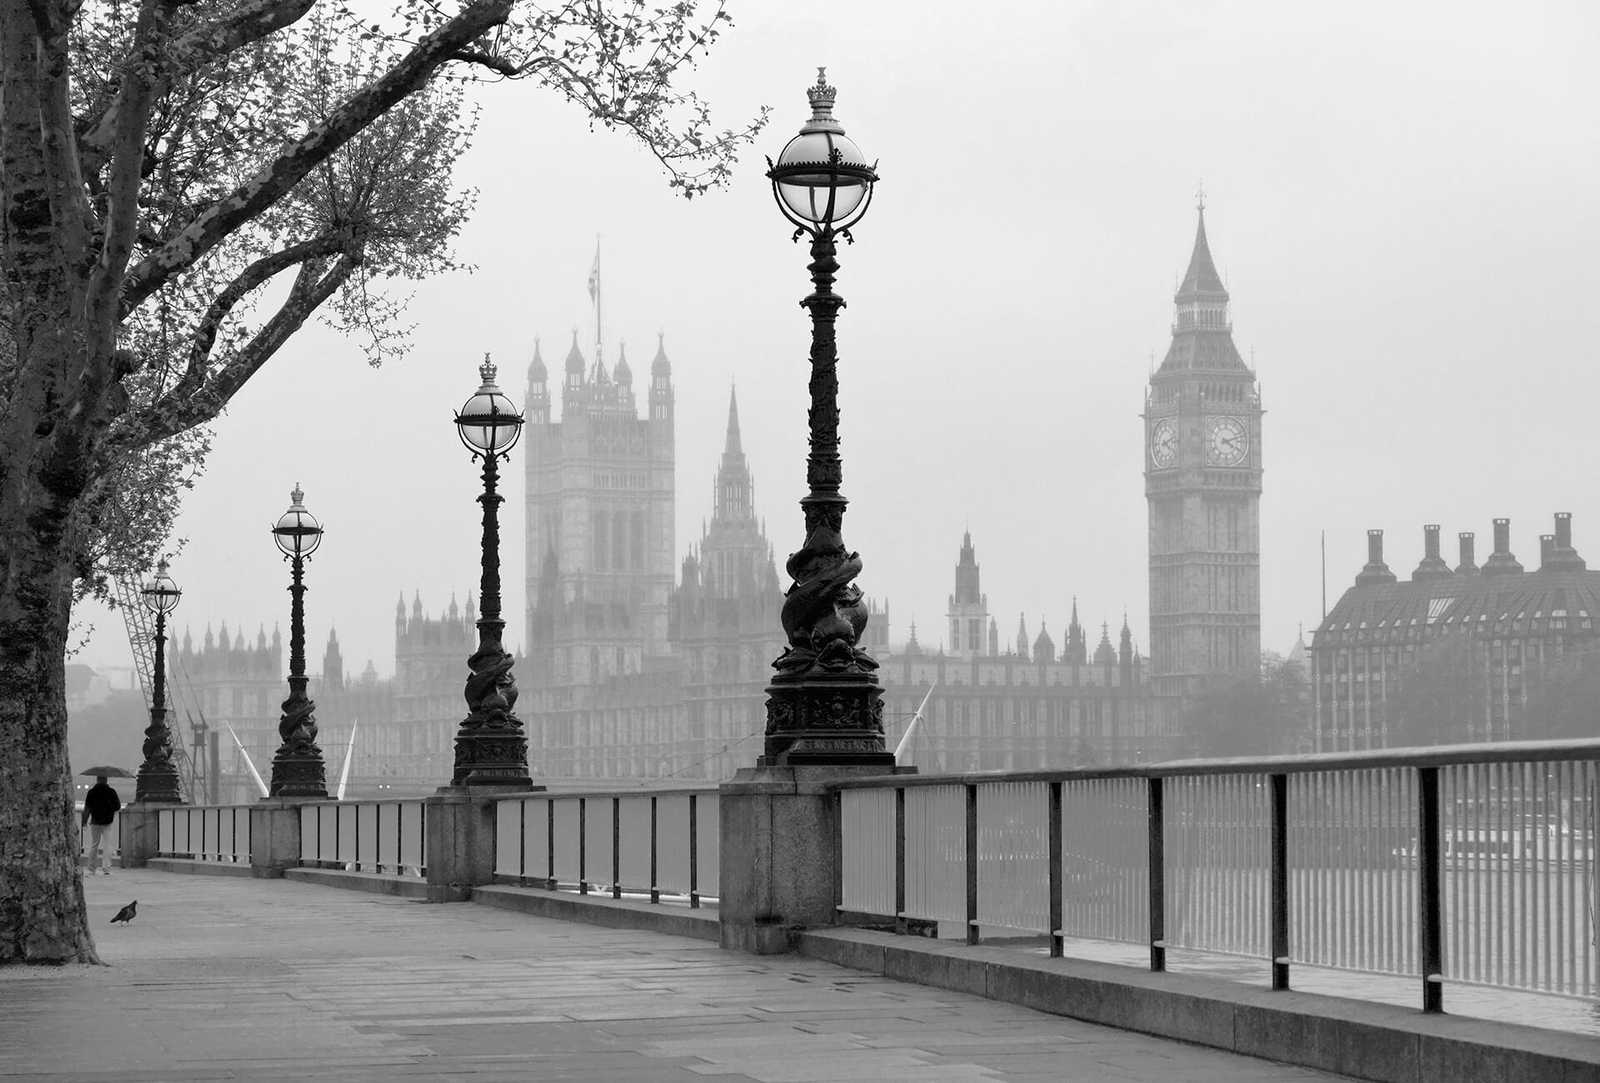         Fototapete London im Nebel – Schwarz, Weiß, Grau
    